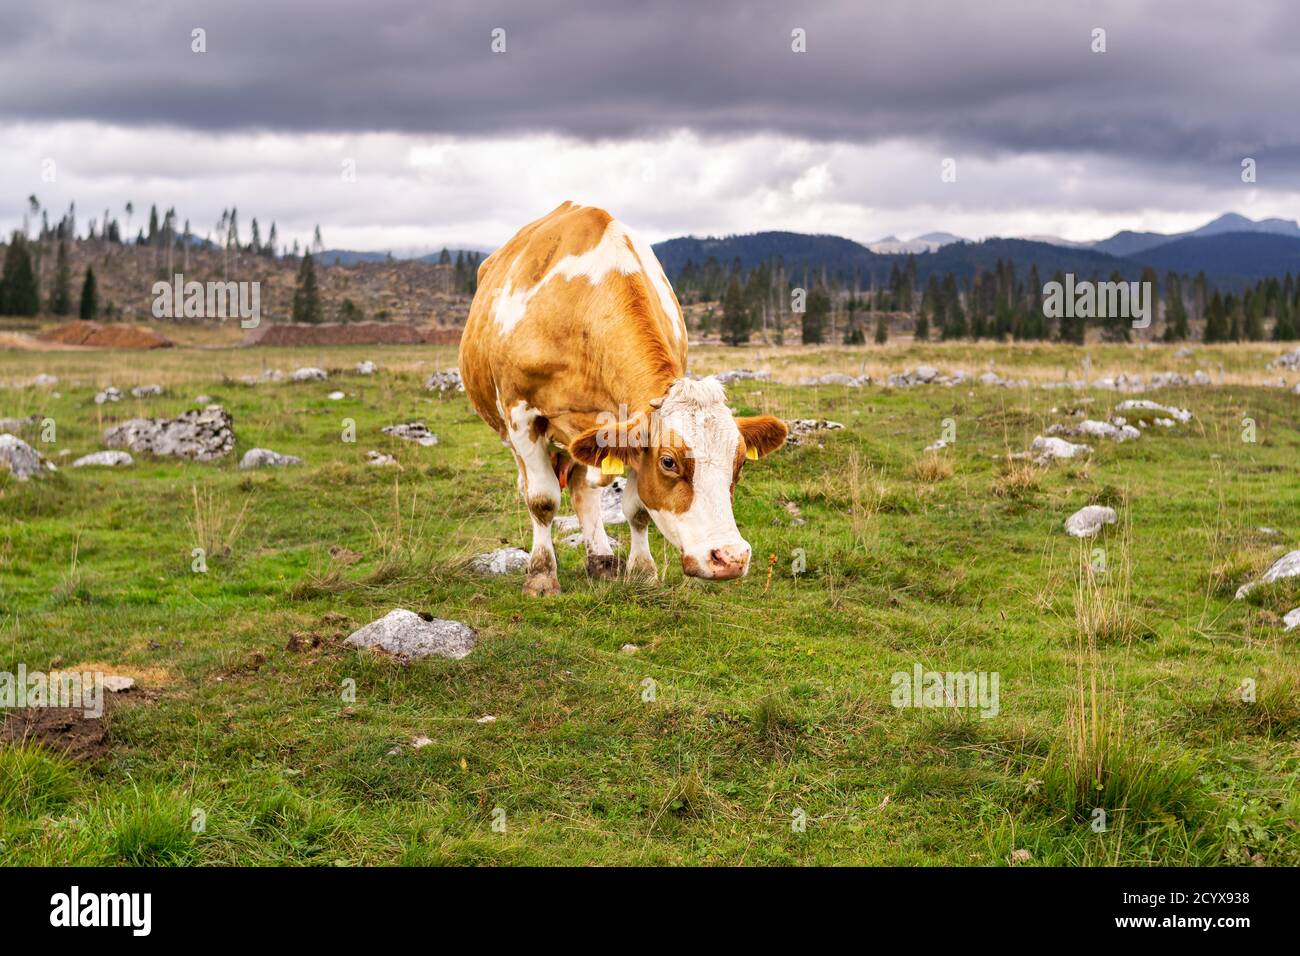 Vaches brunes paissant sur un pré vert. En arrière-plan les bois dévastés par la tempête de Vaia. Enego, Vicenza, Italie Banque D'Images